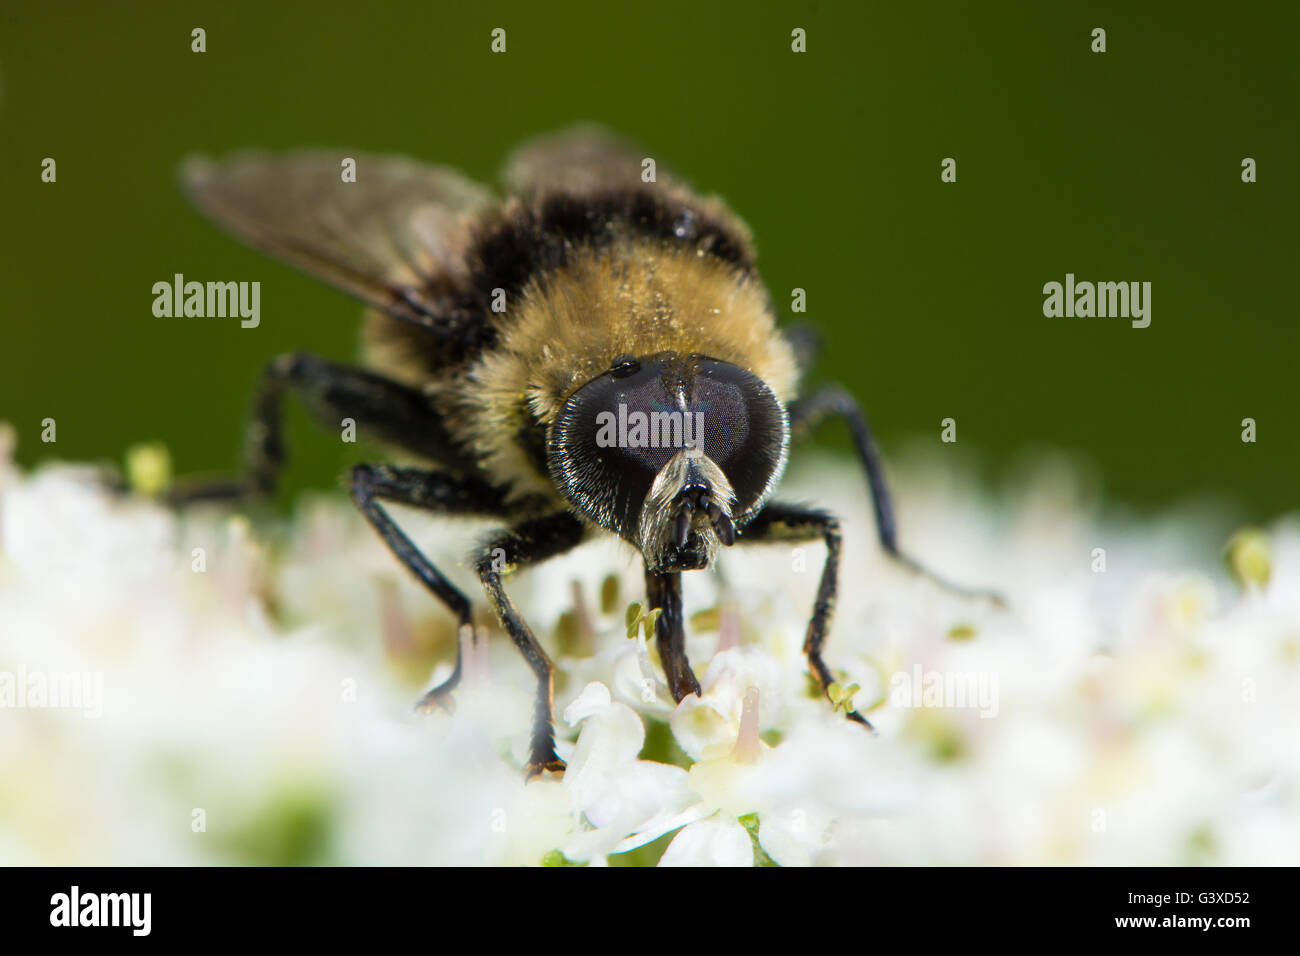 Excelente bumblebee imitar en la familia Syrphidae, sobre hogweed nectaring Foto de stock